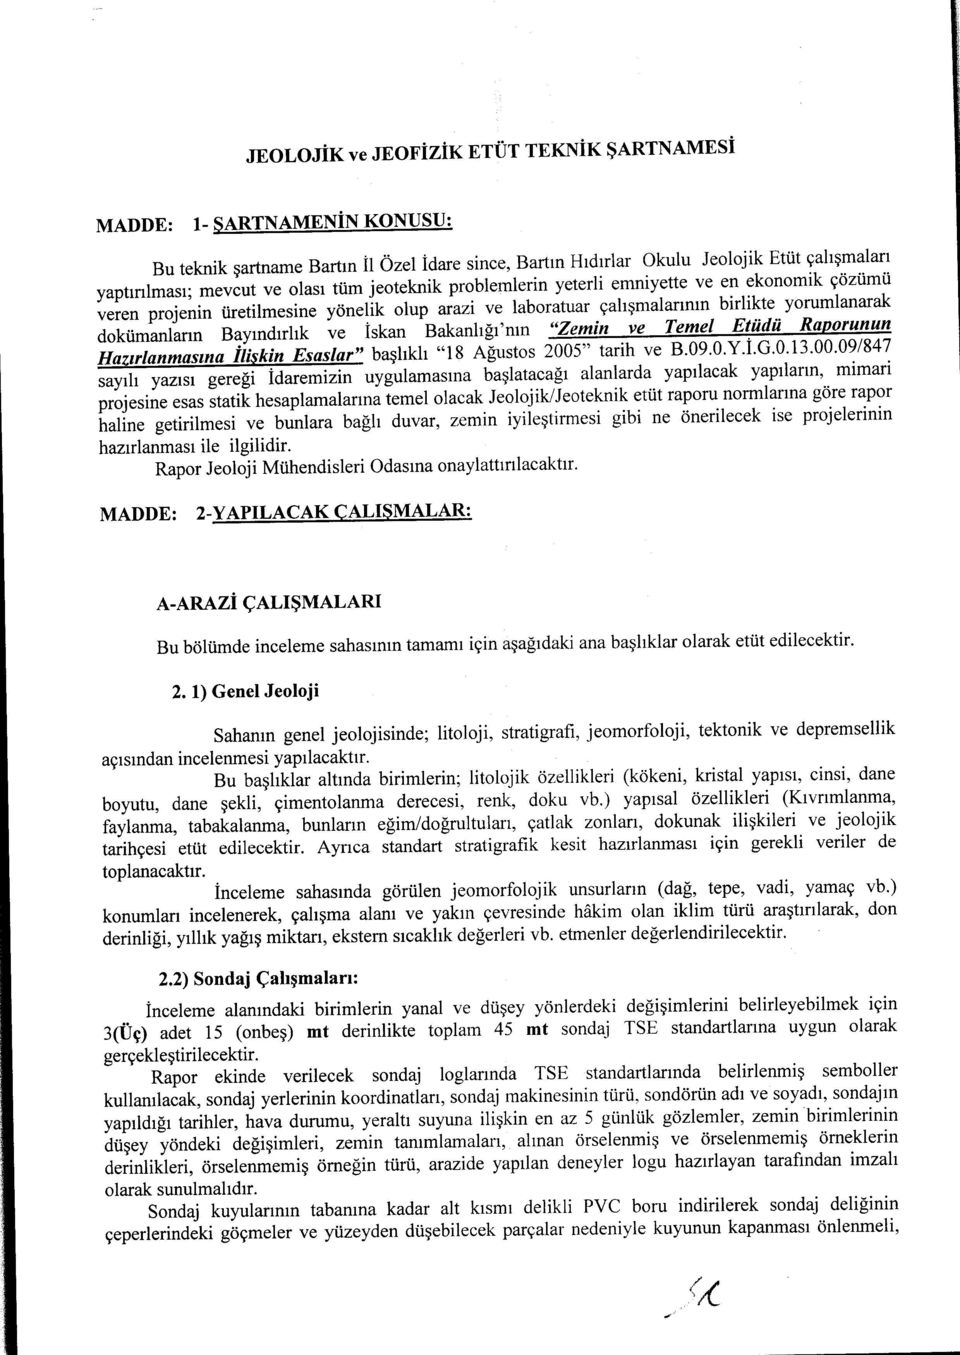 Bakanlığı'nın "Zemin ve Temel Etüdü Raporunun Hazırlanmasına İlişkin Esaslar" başlıklı "18 Ağustos 2005